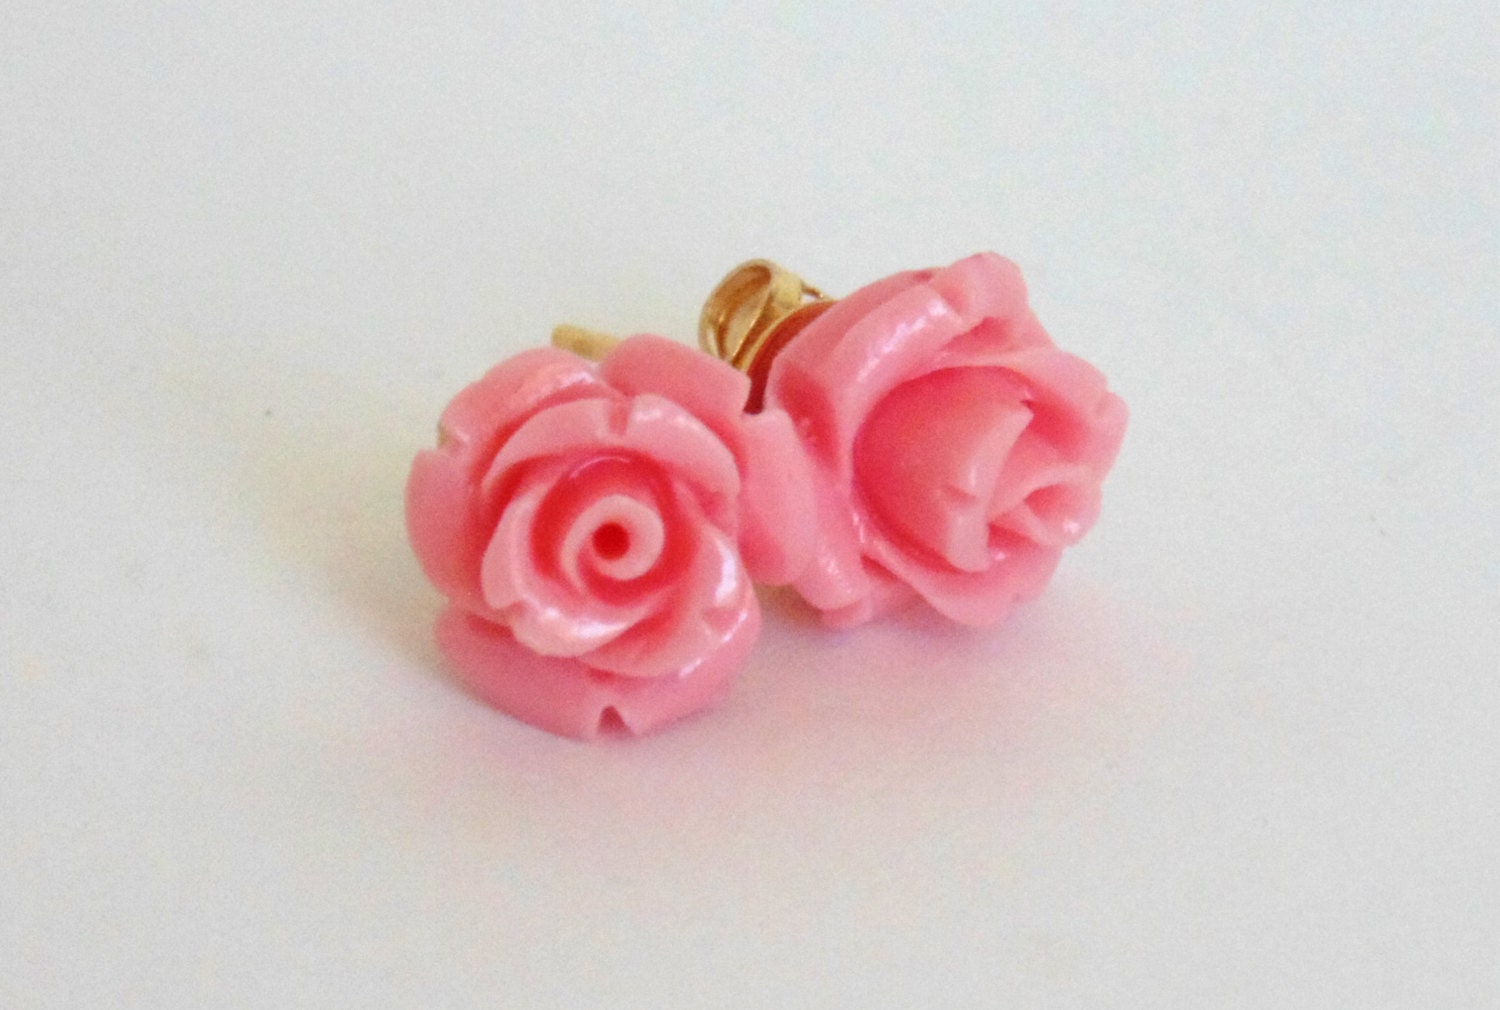 Soft pink rose earrings by ImperialJewelsbyKEM on Etsy